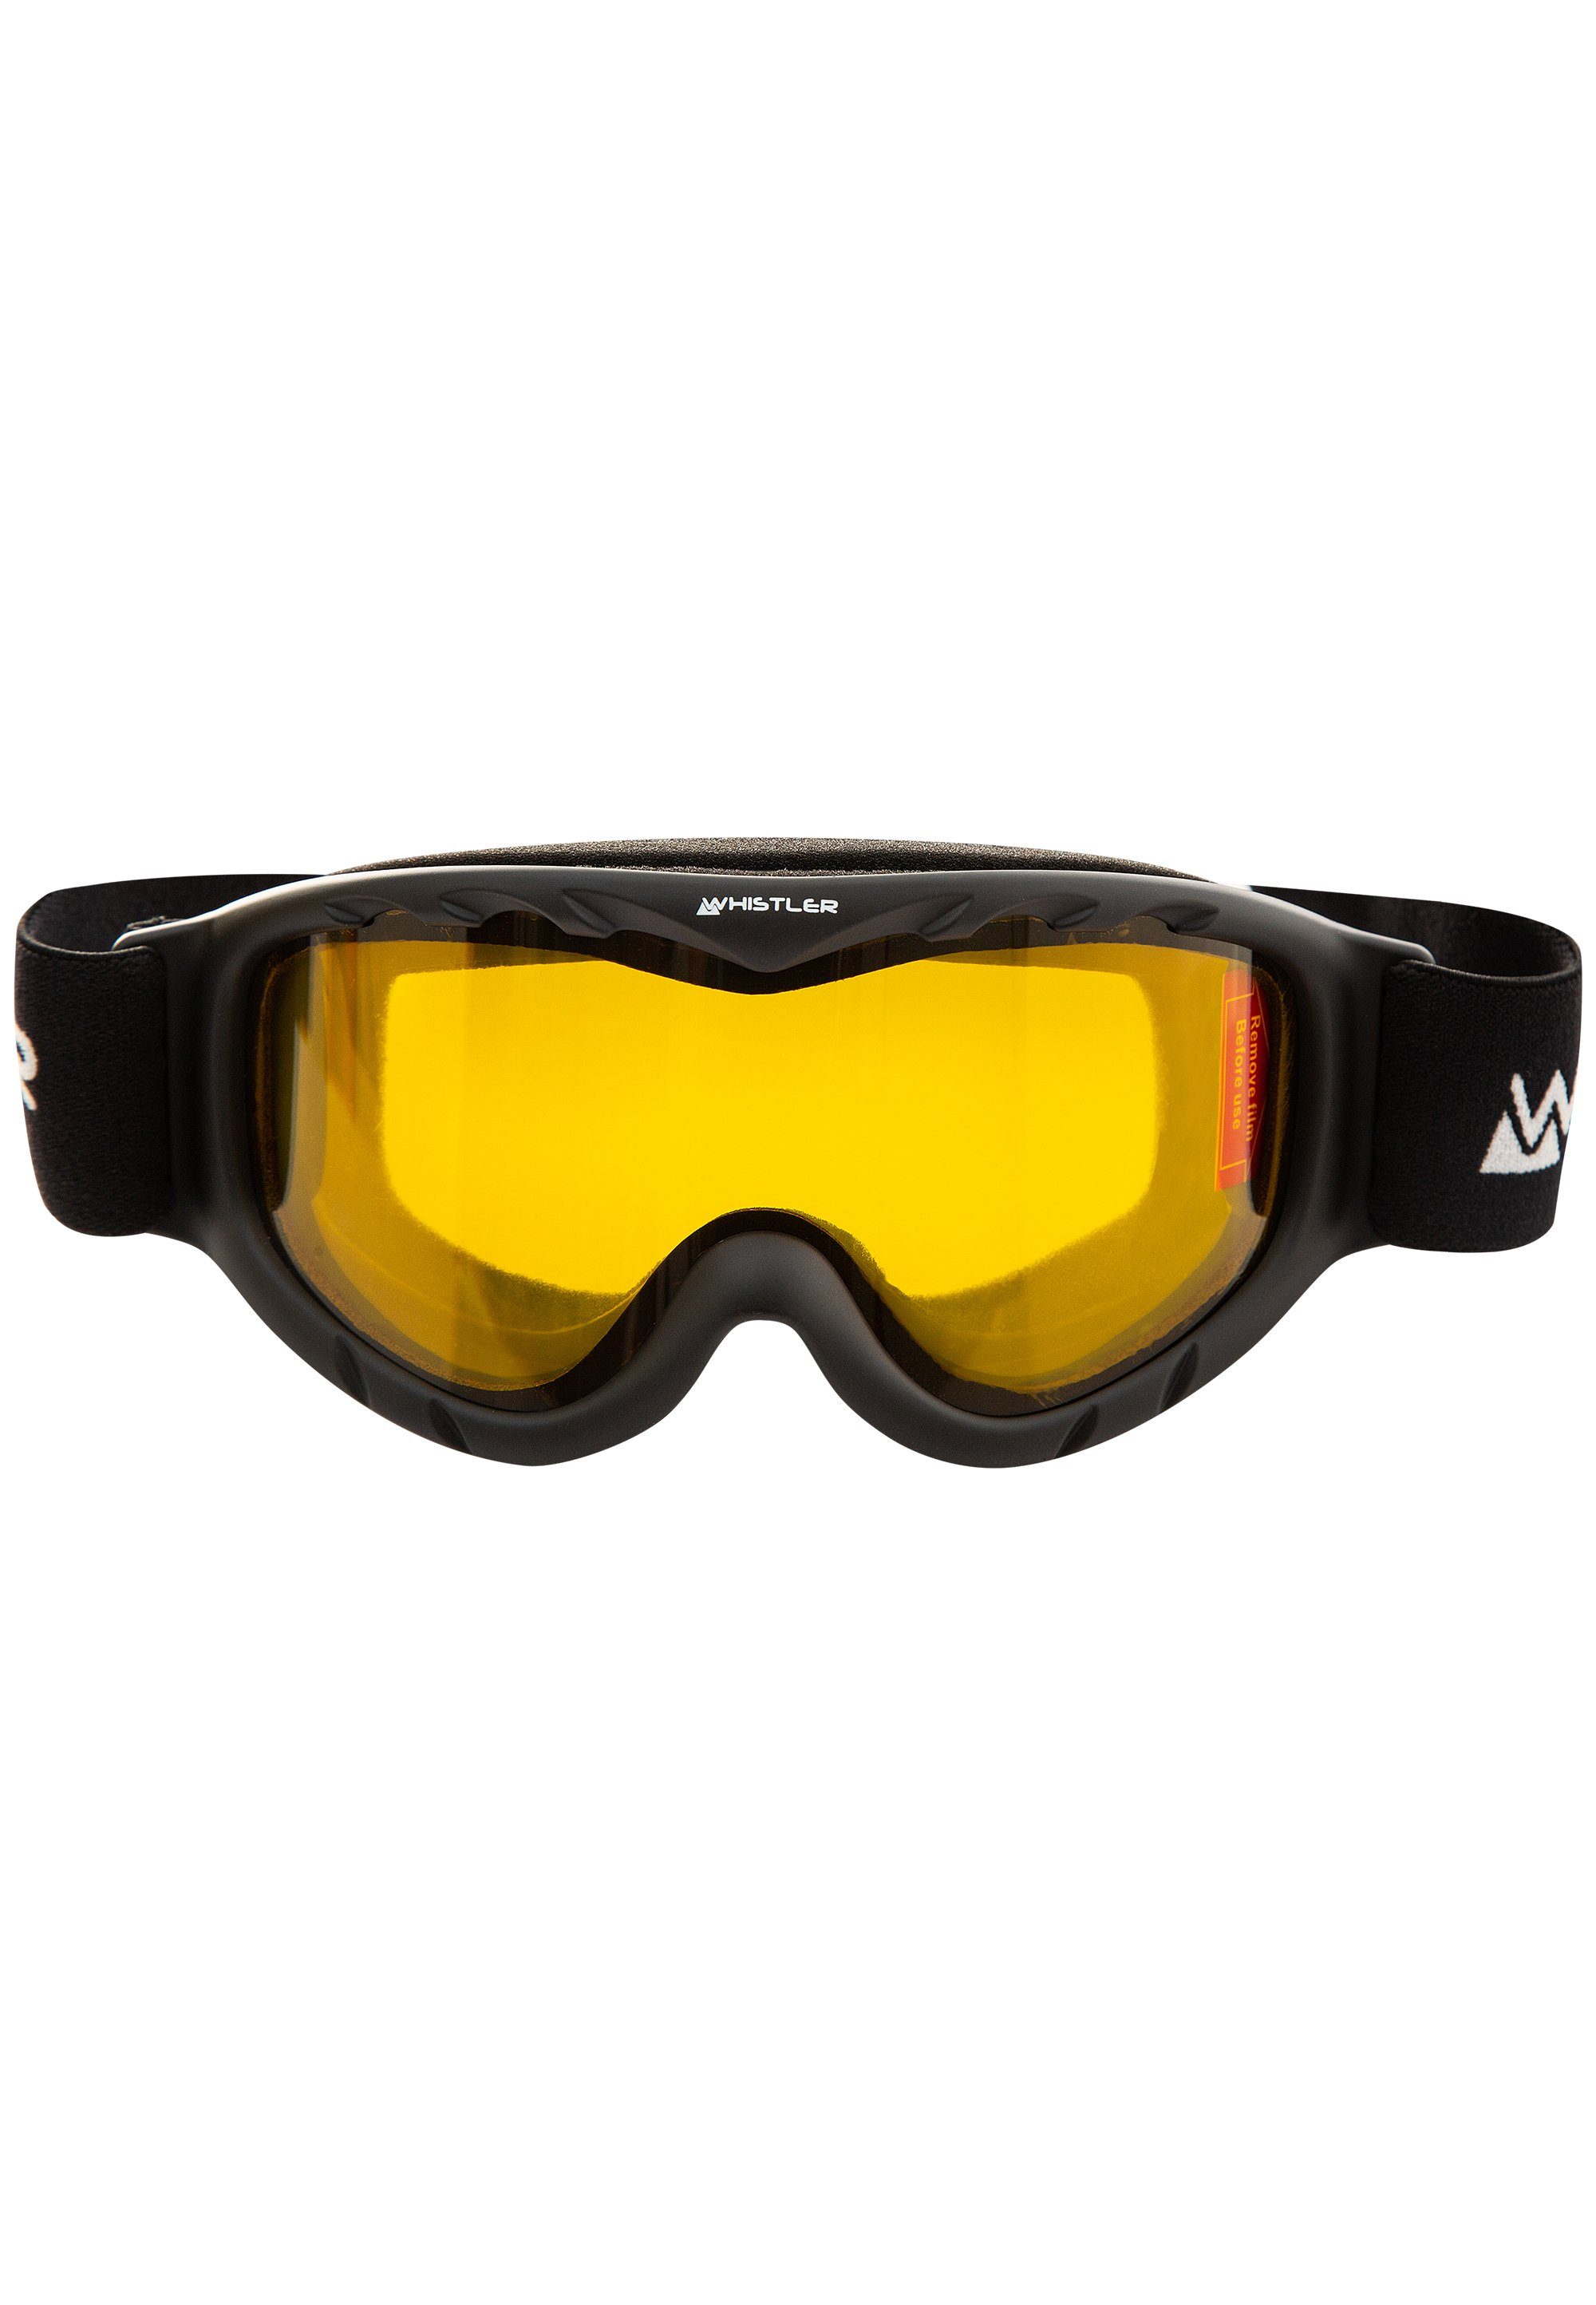 WHISTLER Skibrille WS300 Jr. Ski Goggle, mit Anti-Fog-Beschichtung schwarz